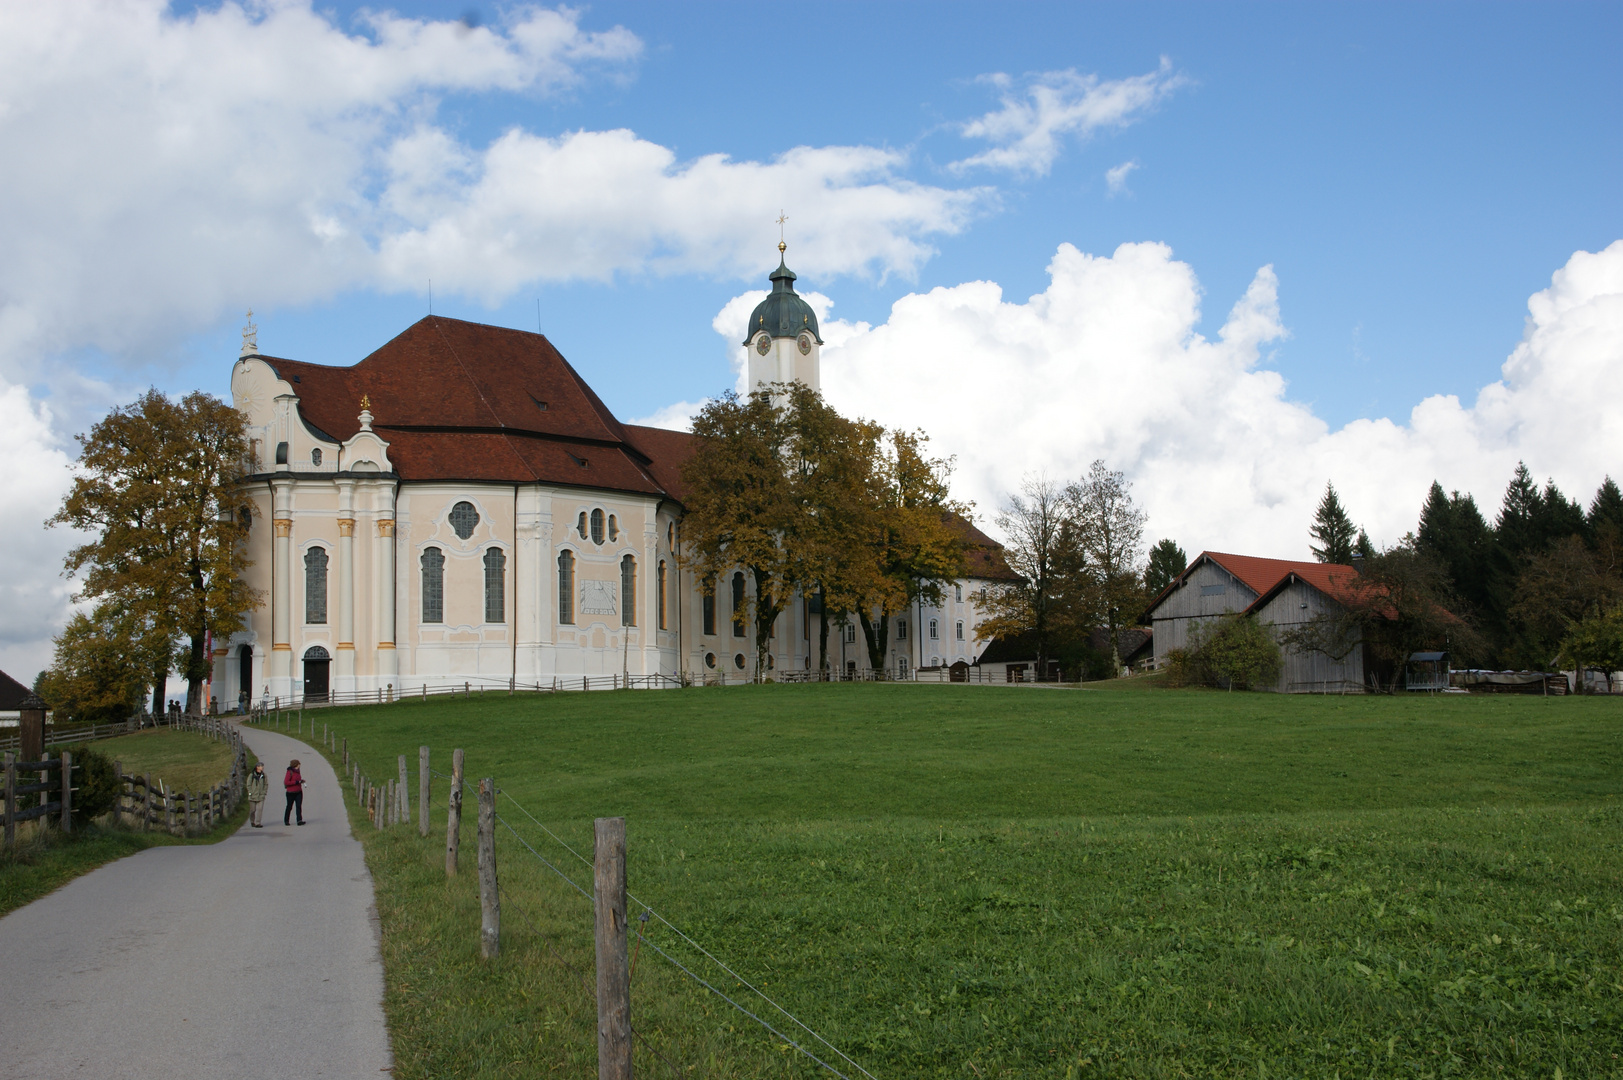 Wieskirche Steingaden